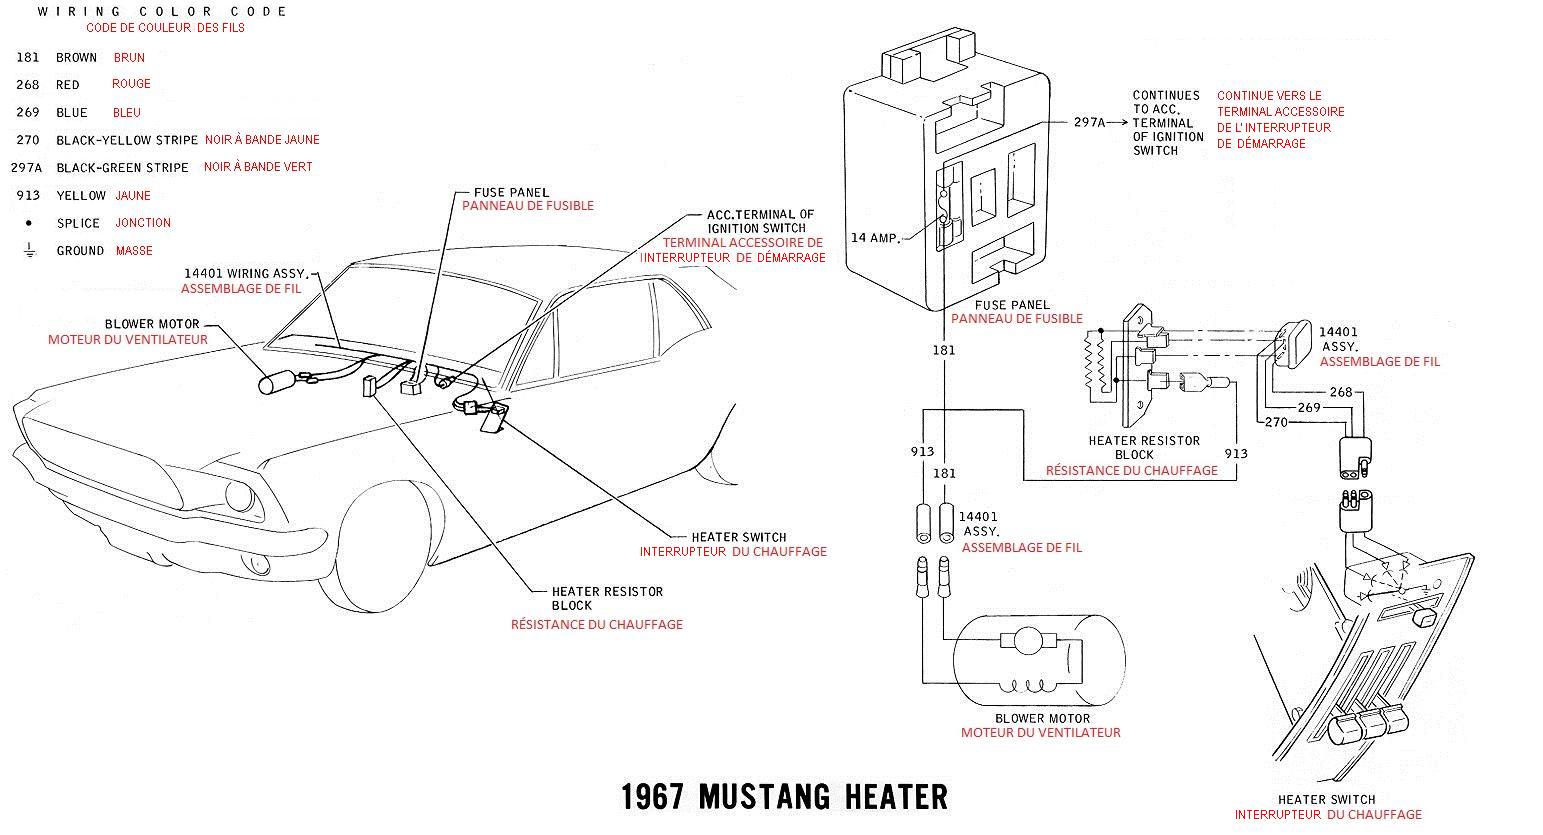 Schéma et diagramme électrique en français pour la Mustang 1967 Ok_13_10